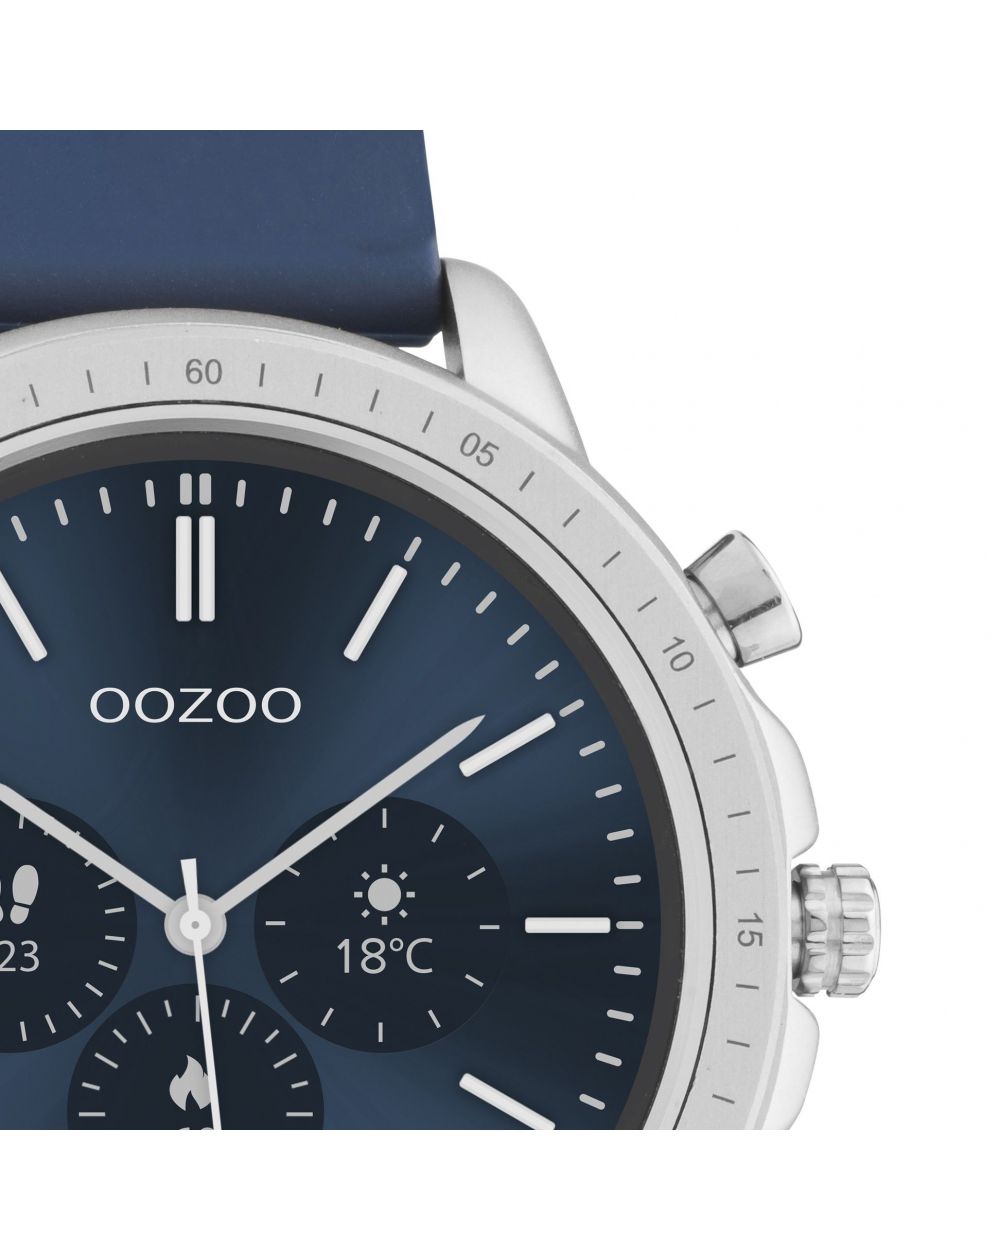 Montre Oozoo Q00315 - Smartwatch - Marque OOZOO - Livraison gratuite